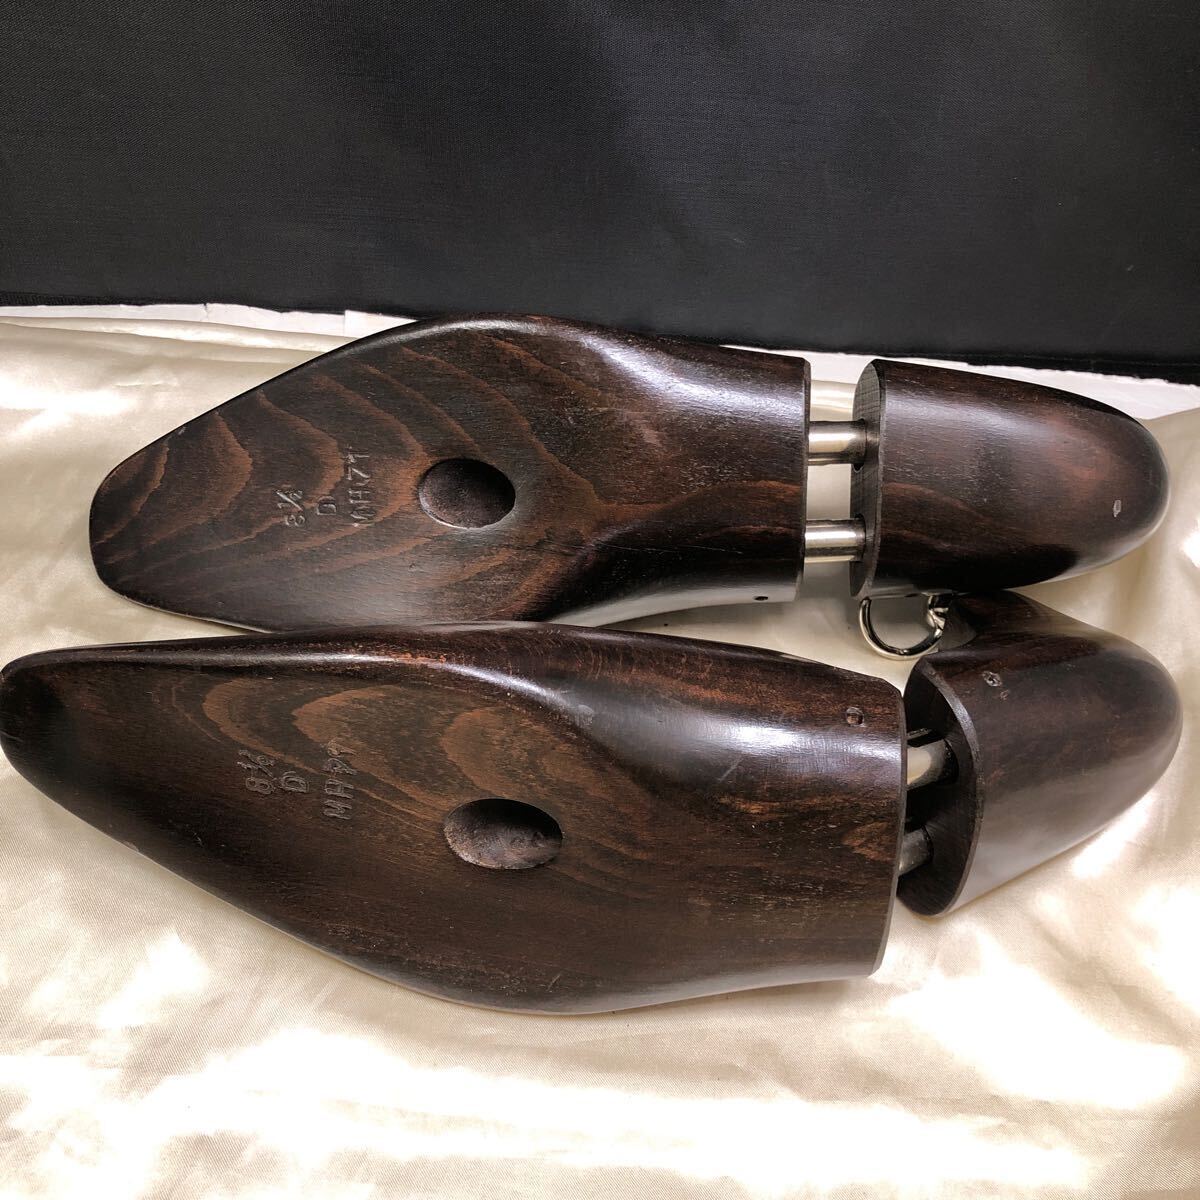 シューツリー 3組セット GAZIANO&GIRLING ガジアーノ＆ガーリング シューキーパー 木製 紳士靴用 メンズシューズ用 サイズ8 1/2 サイズ9